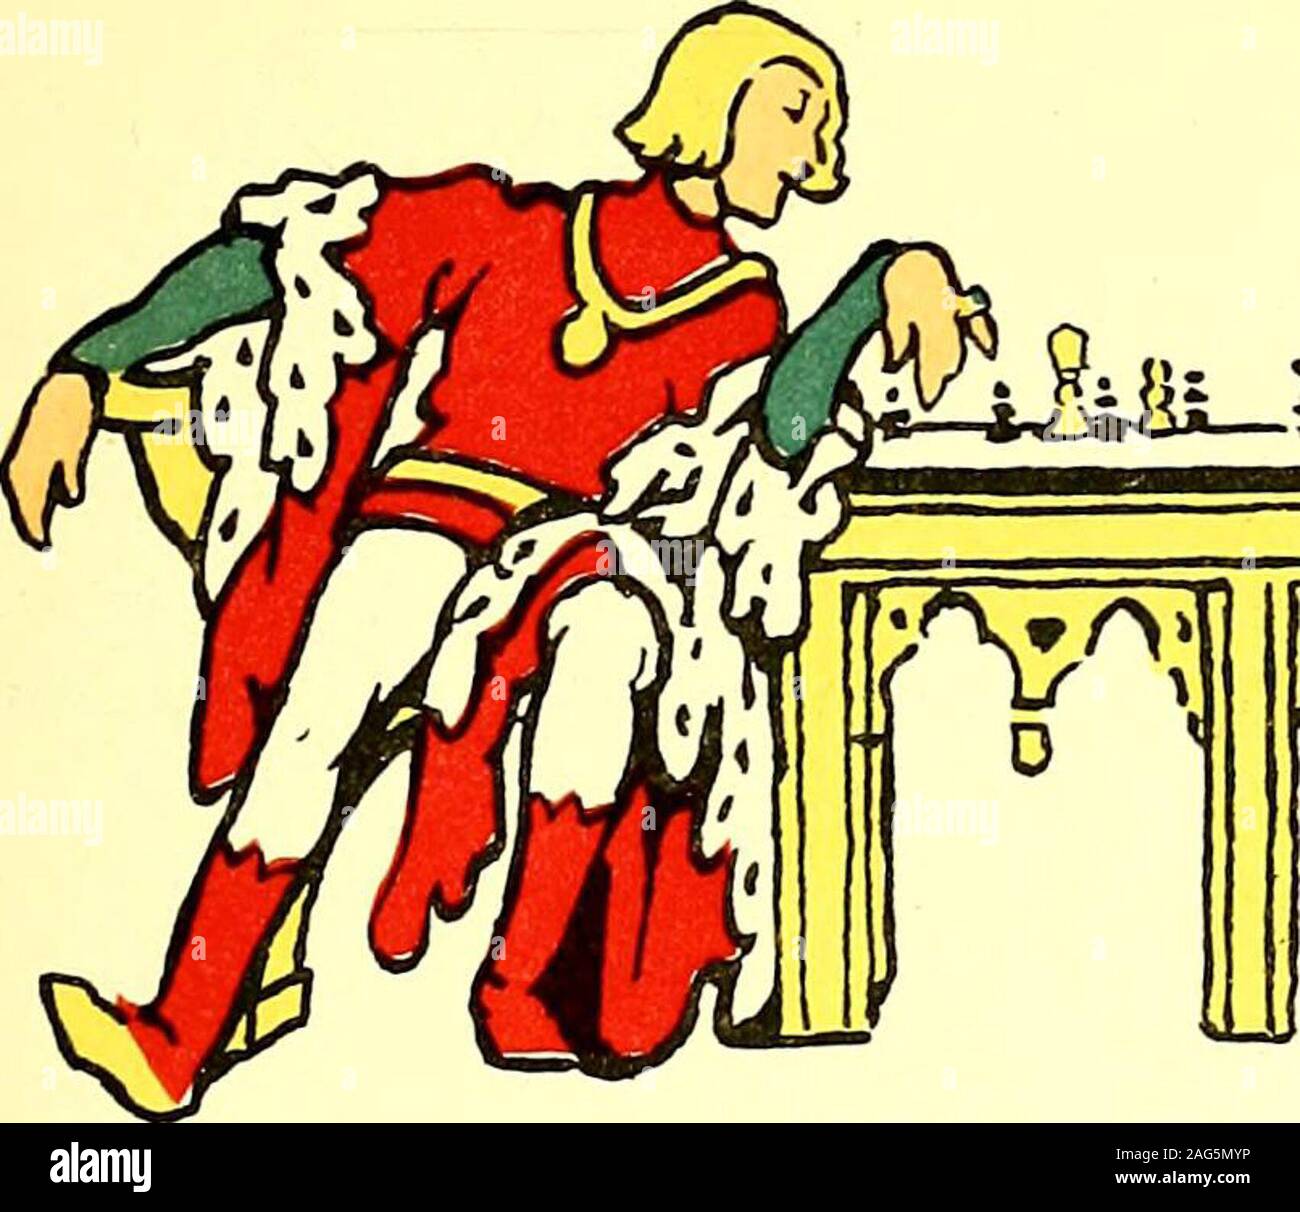 La leyenda del tablero de ajedrez